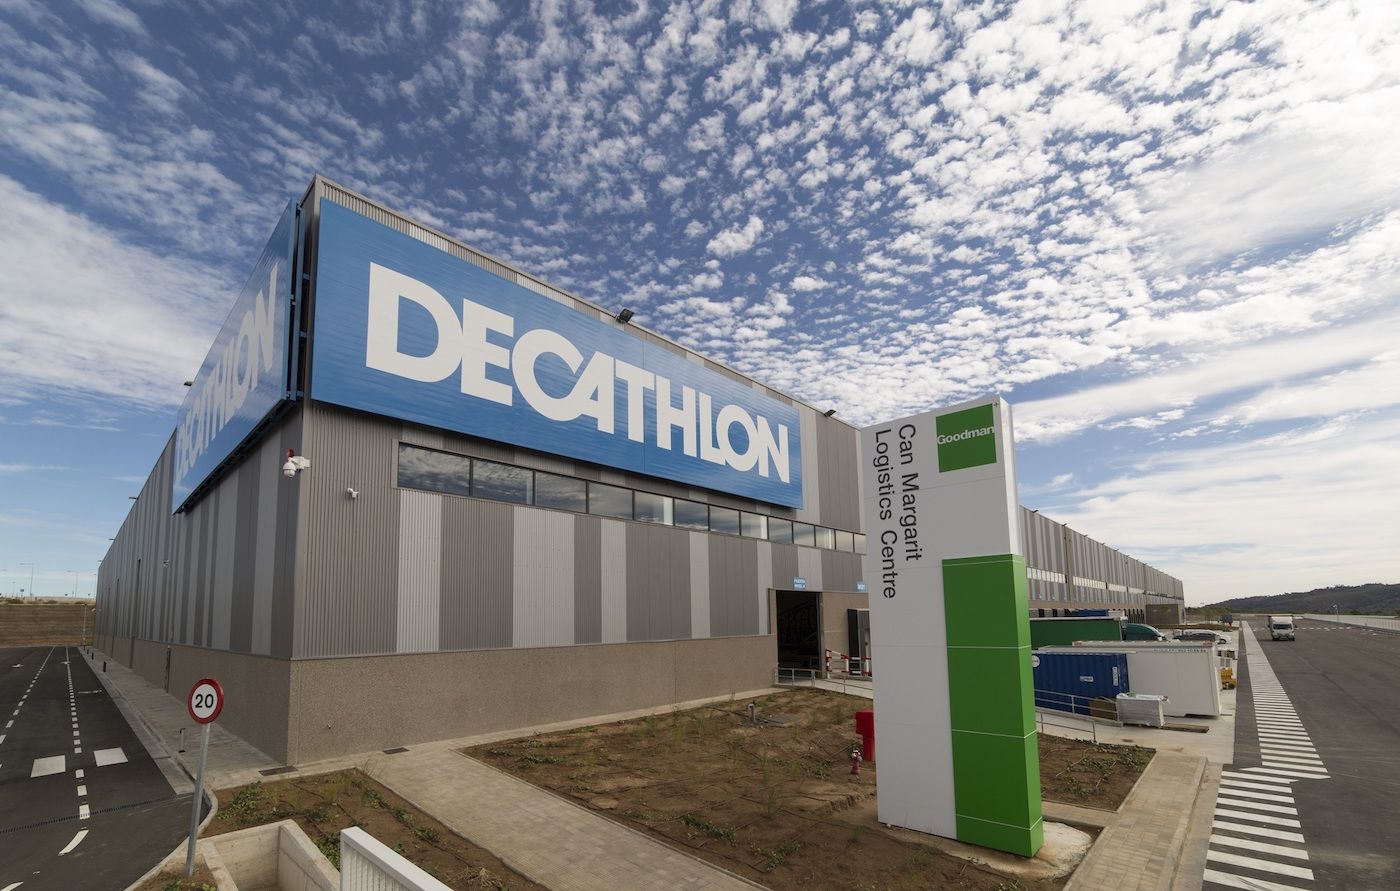 Centro de Decathlon desarrollado por Goodman en Barcelona